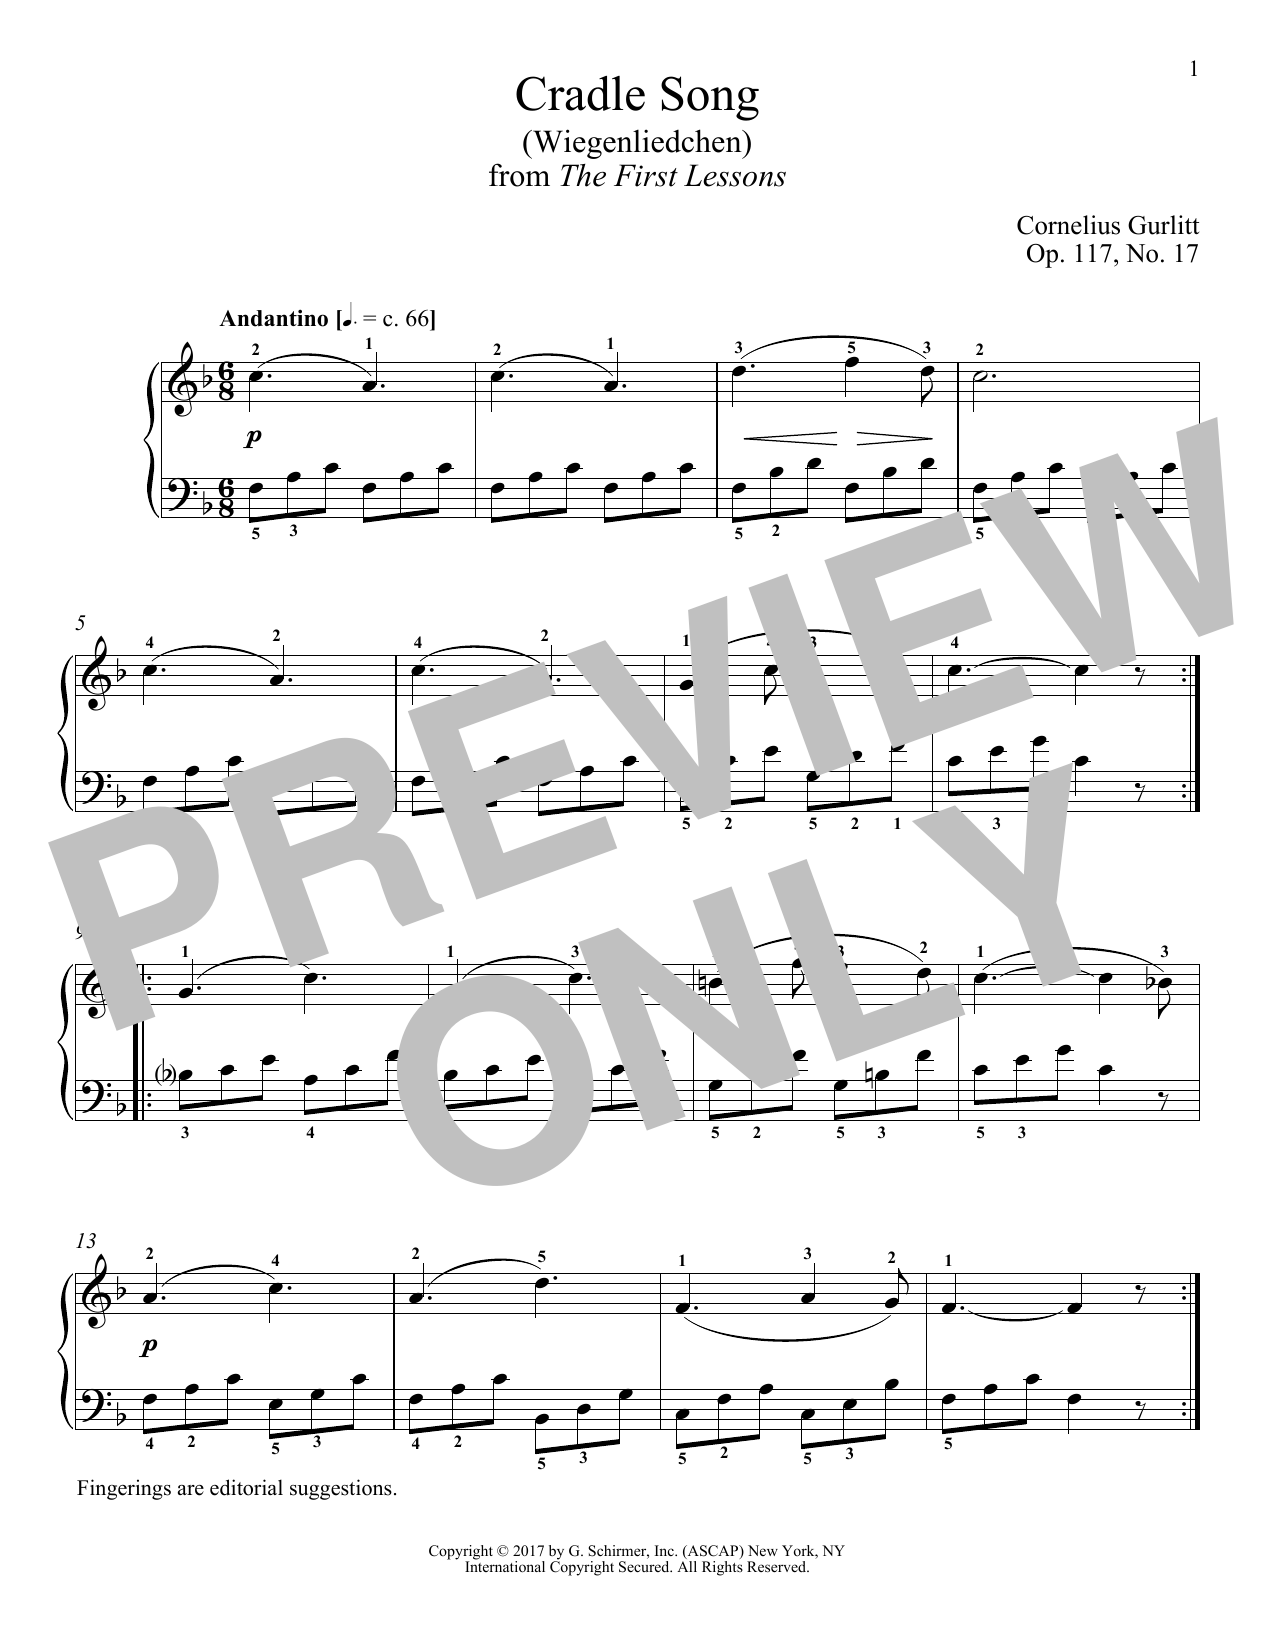 Download Cornelius Gurlitt Cradle Song (Wiegenliedchen), Op. 117, Sheet Music